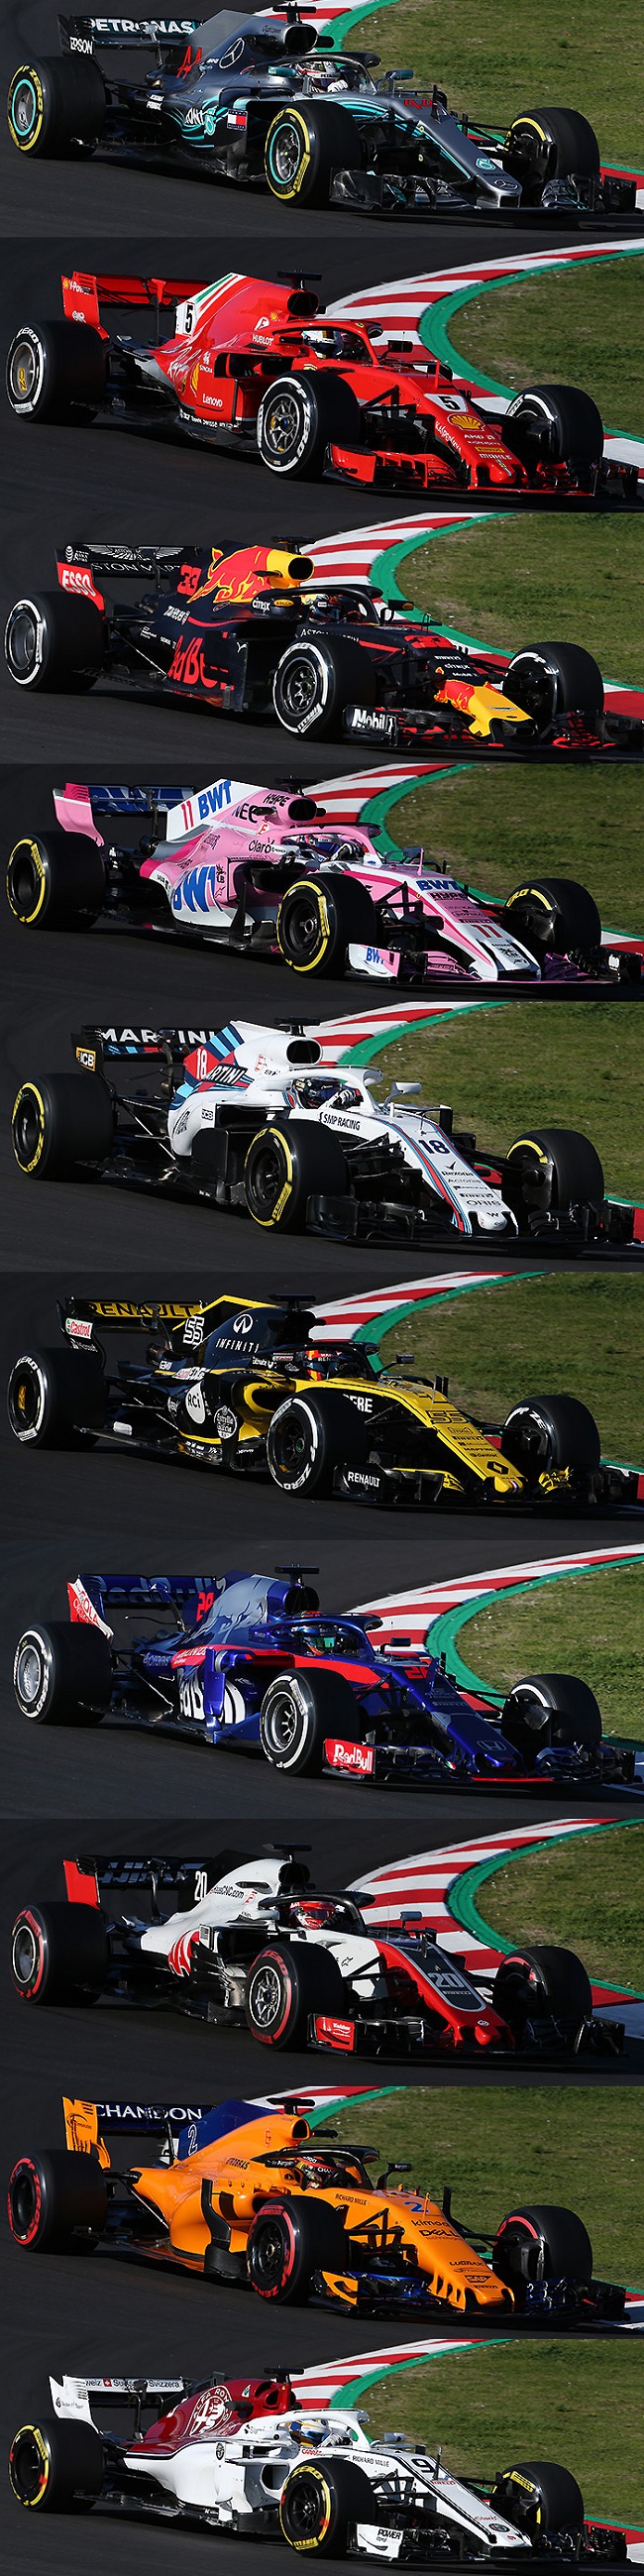 F1 18 全チームのマシン画像並べて比較 レッドブルのサイドポンツーン薄すぎ F1モタスポgp Com